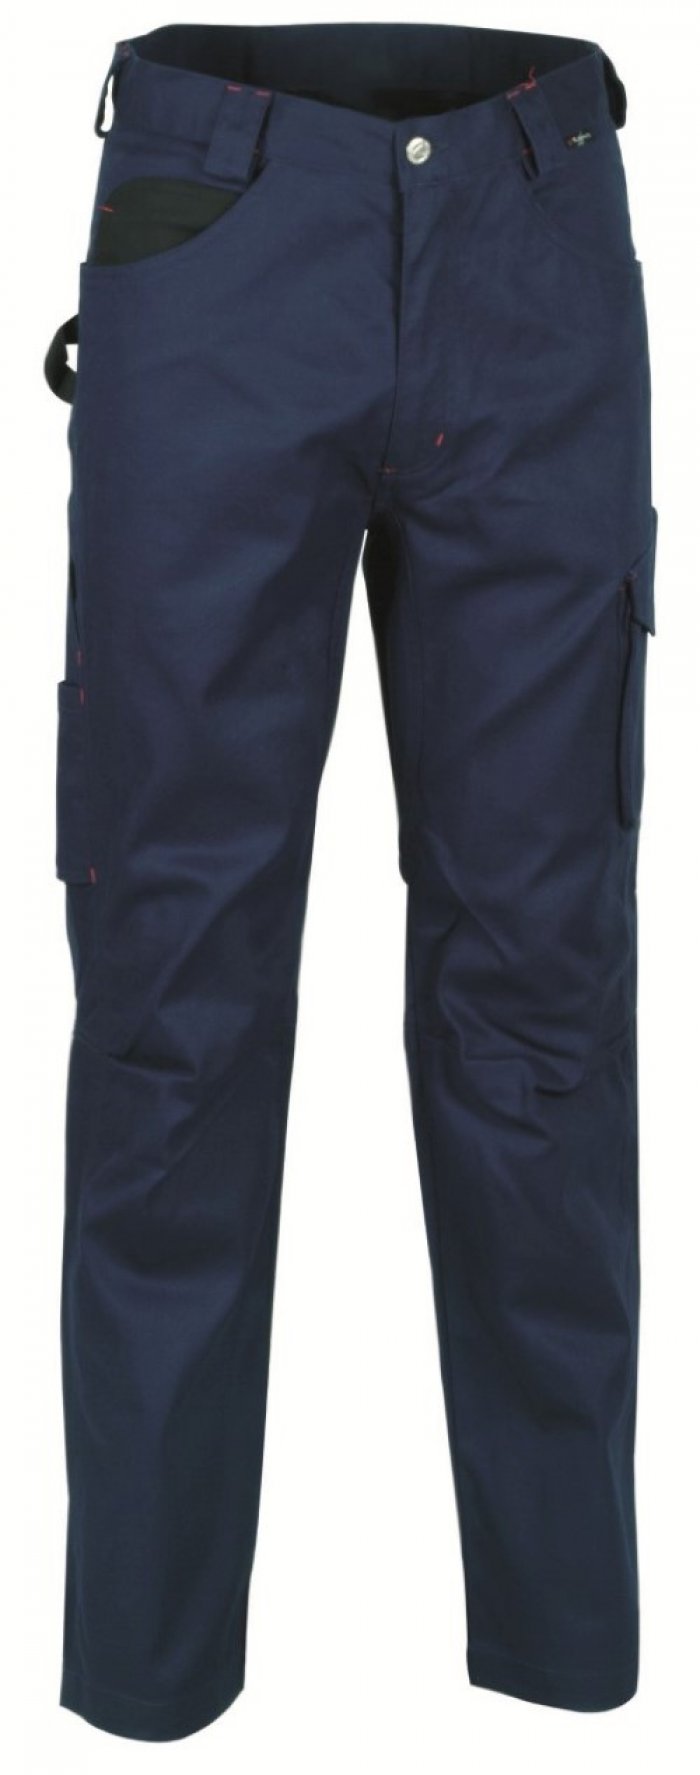 Pantalone drill colore navy tg.48